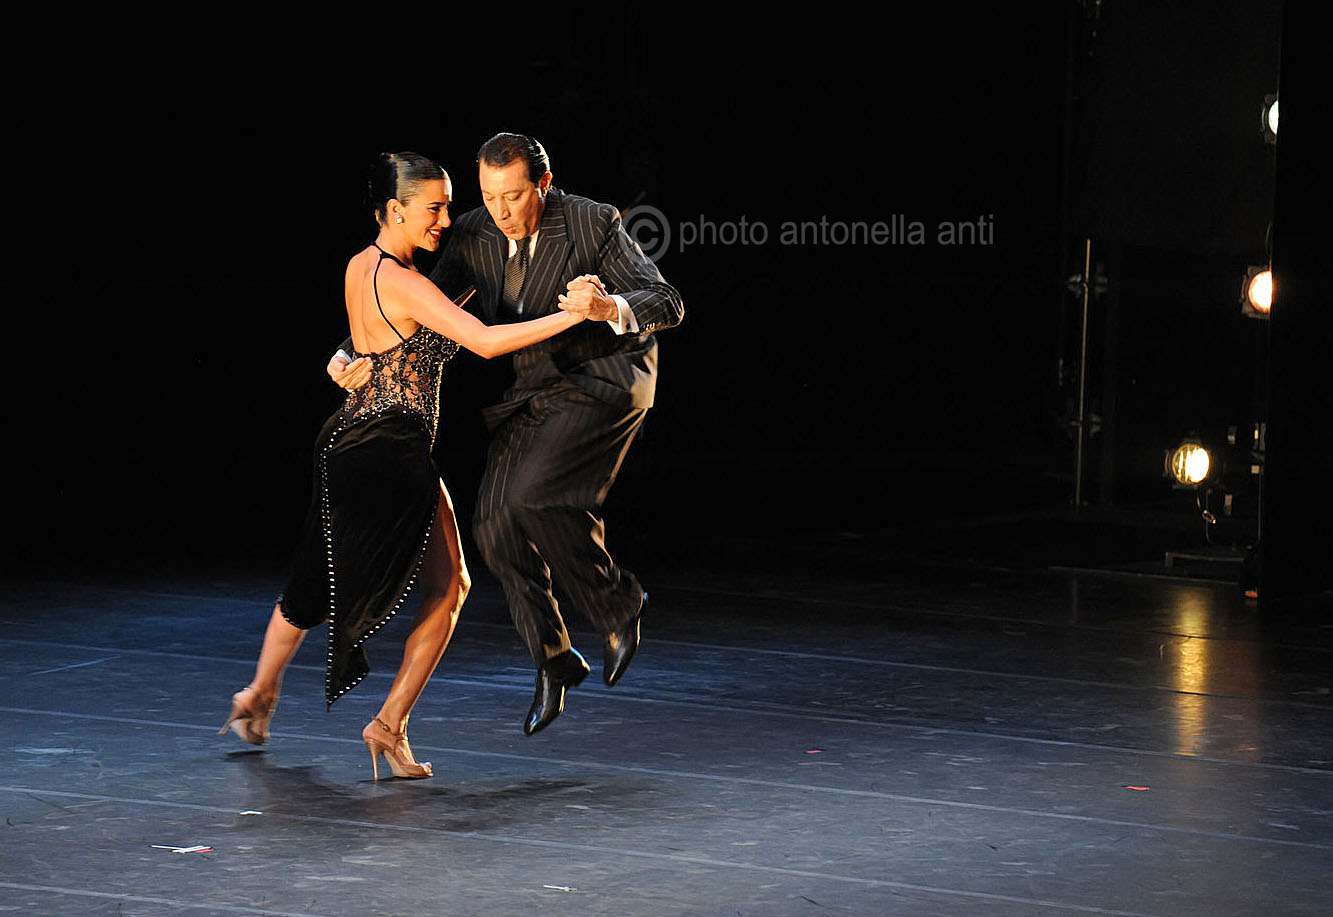 29/07/2014 Gran Galà Danza Estate Teatrale